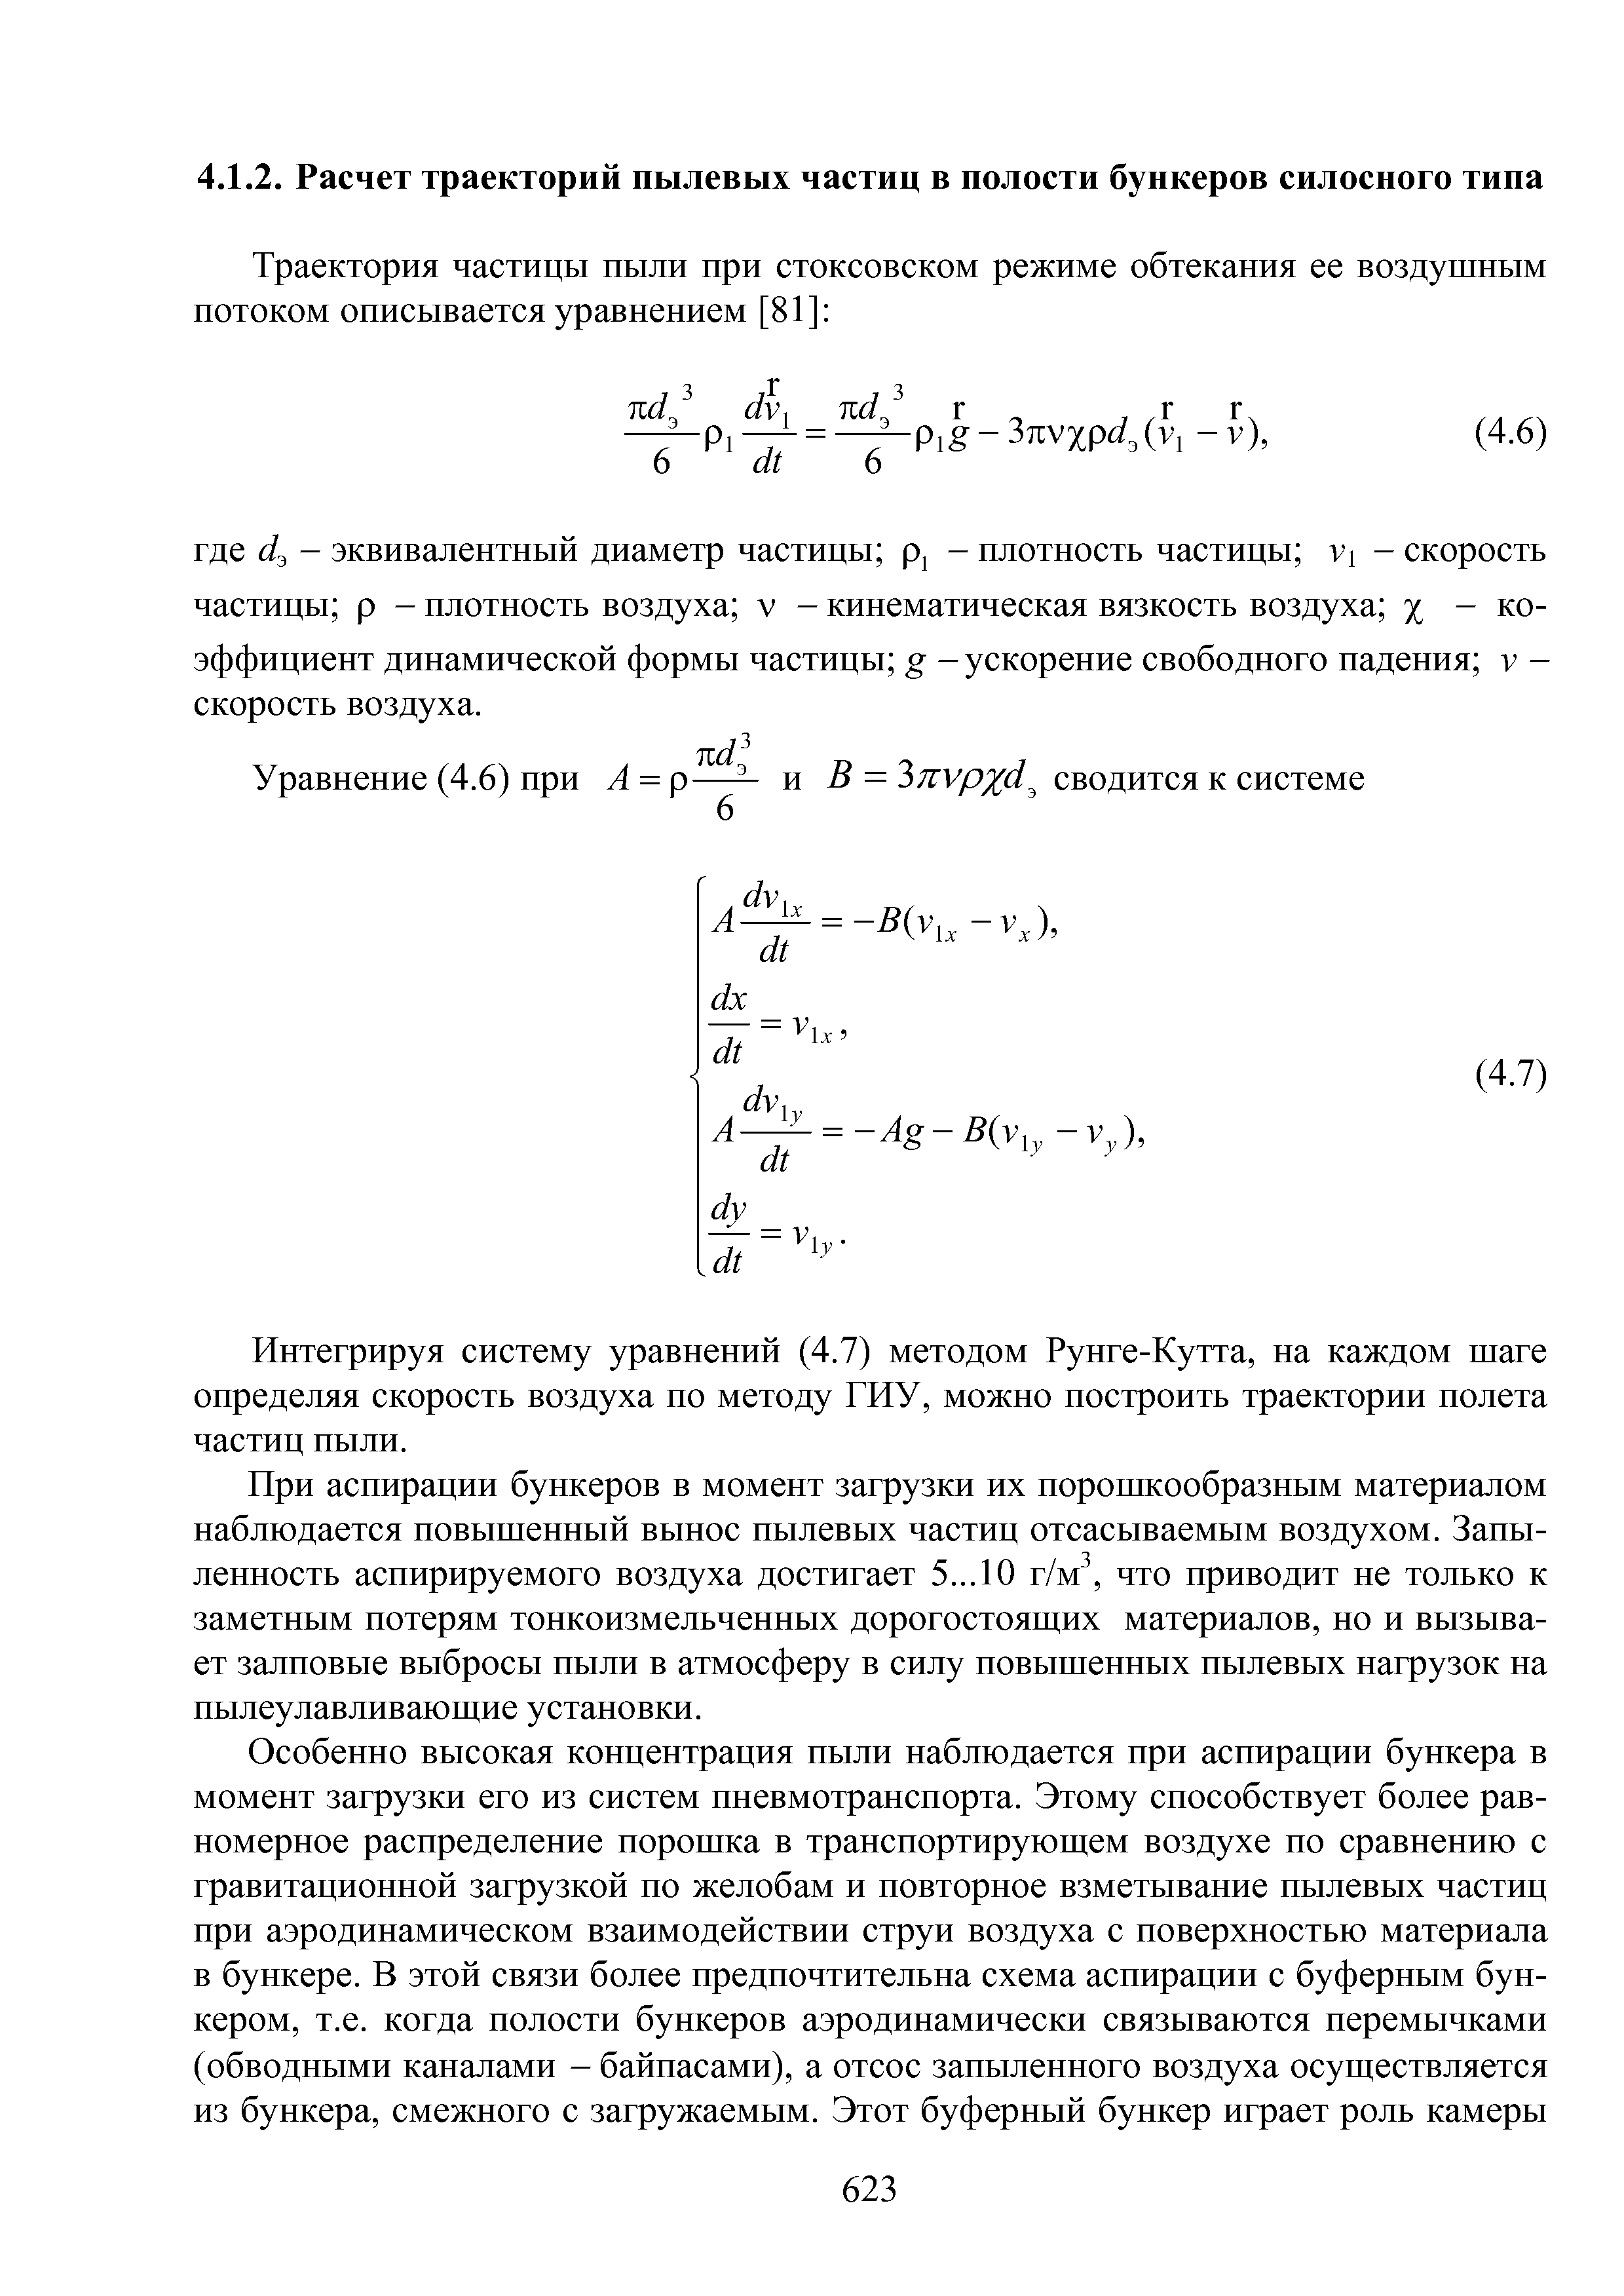 Интегрируя систему уравнений (4.7) методом Рунге-Кутта, на каждом шаге определяя скорость воздуха по методу ГИУ, можно построить траектории полета частиц пыли.
